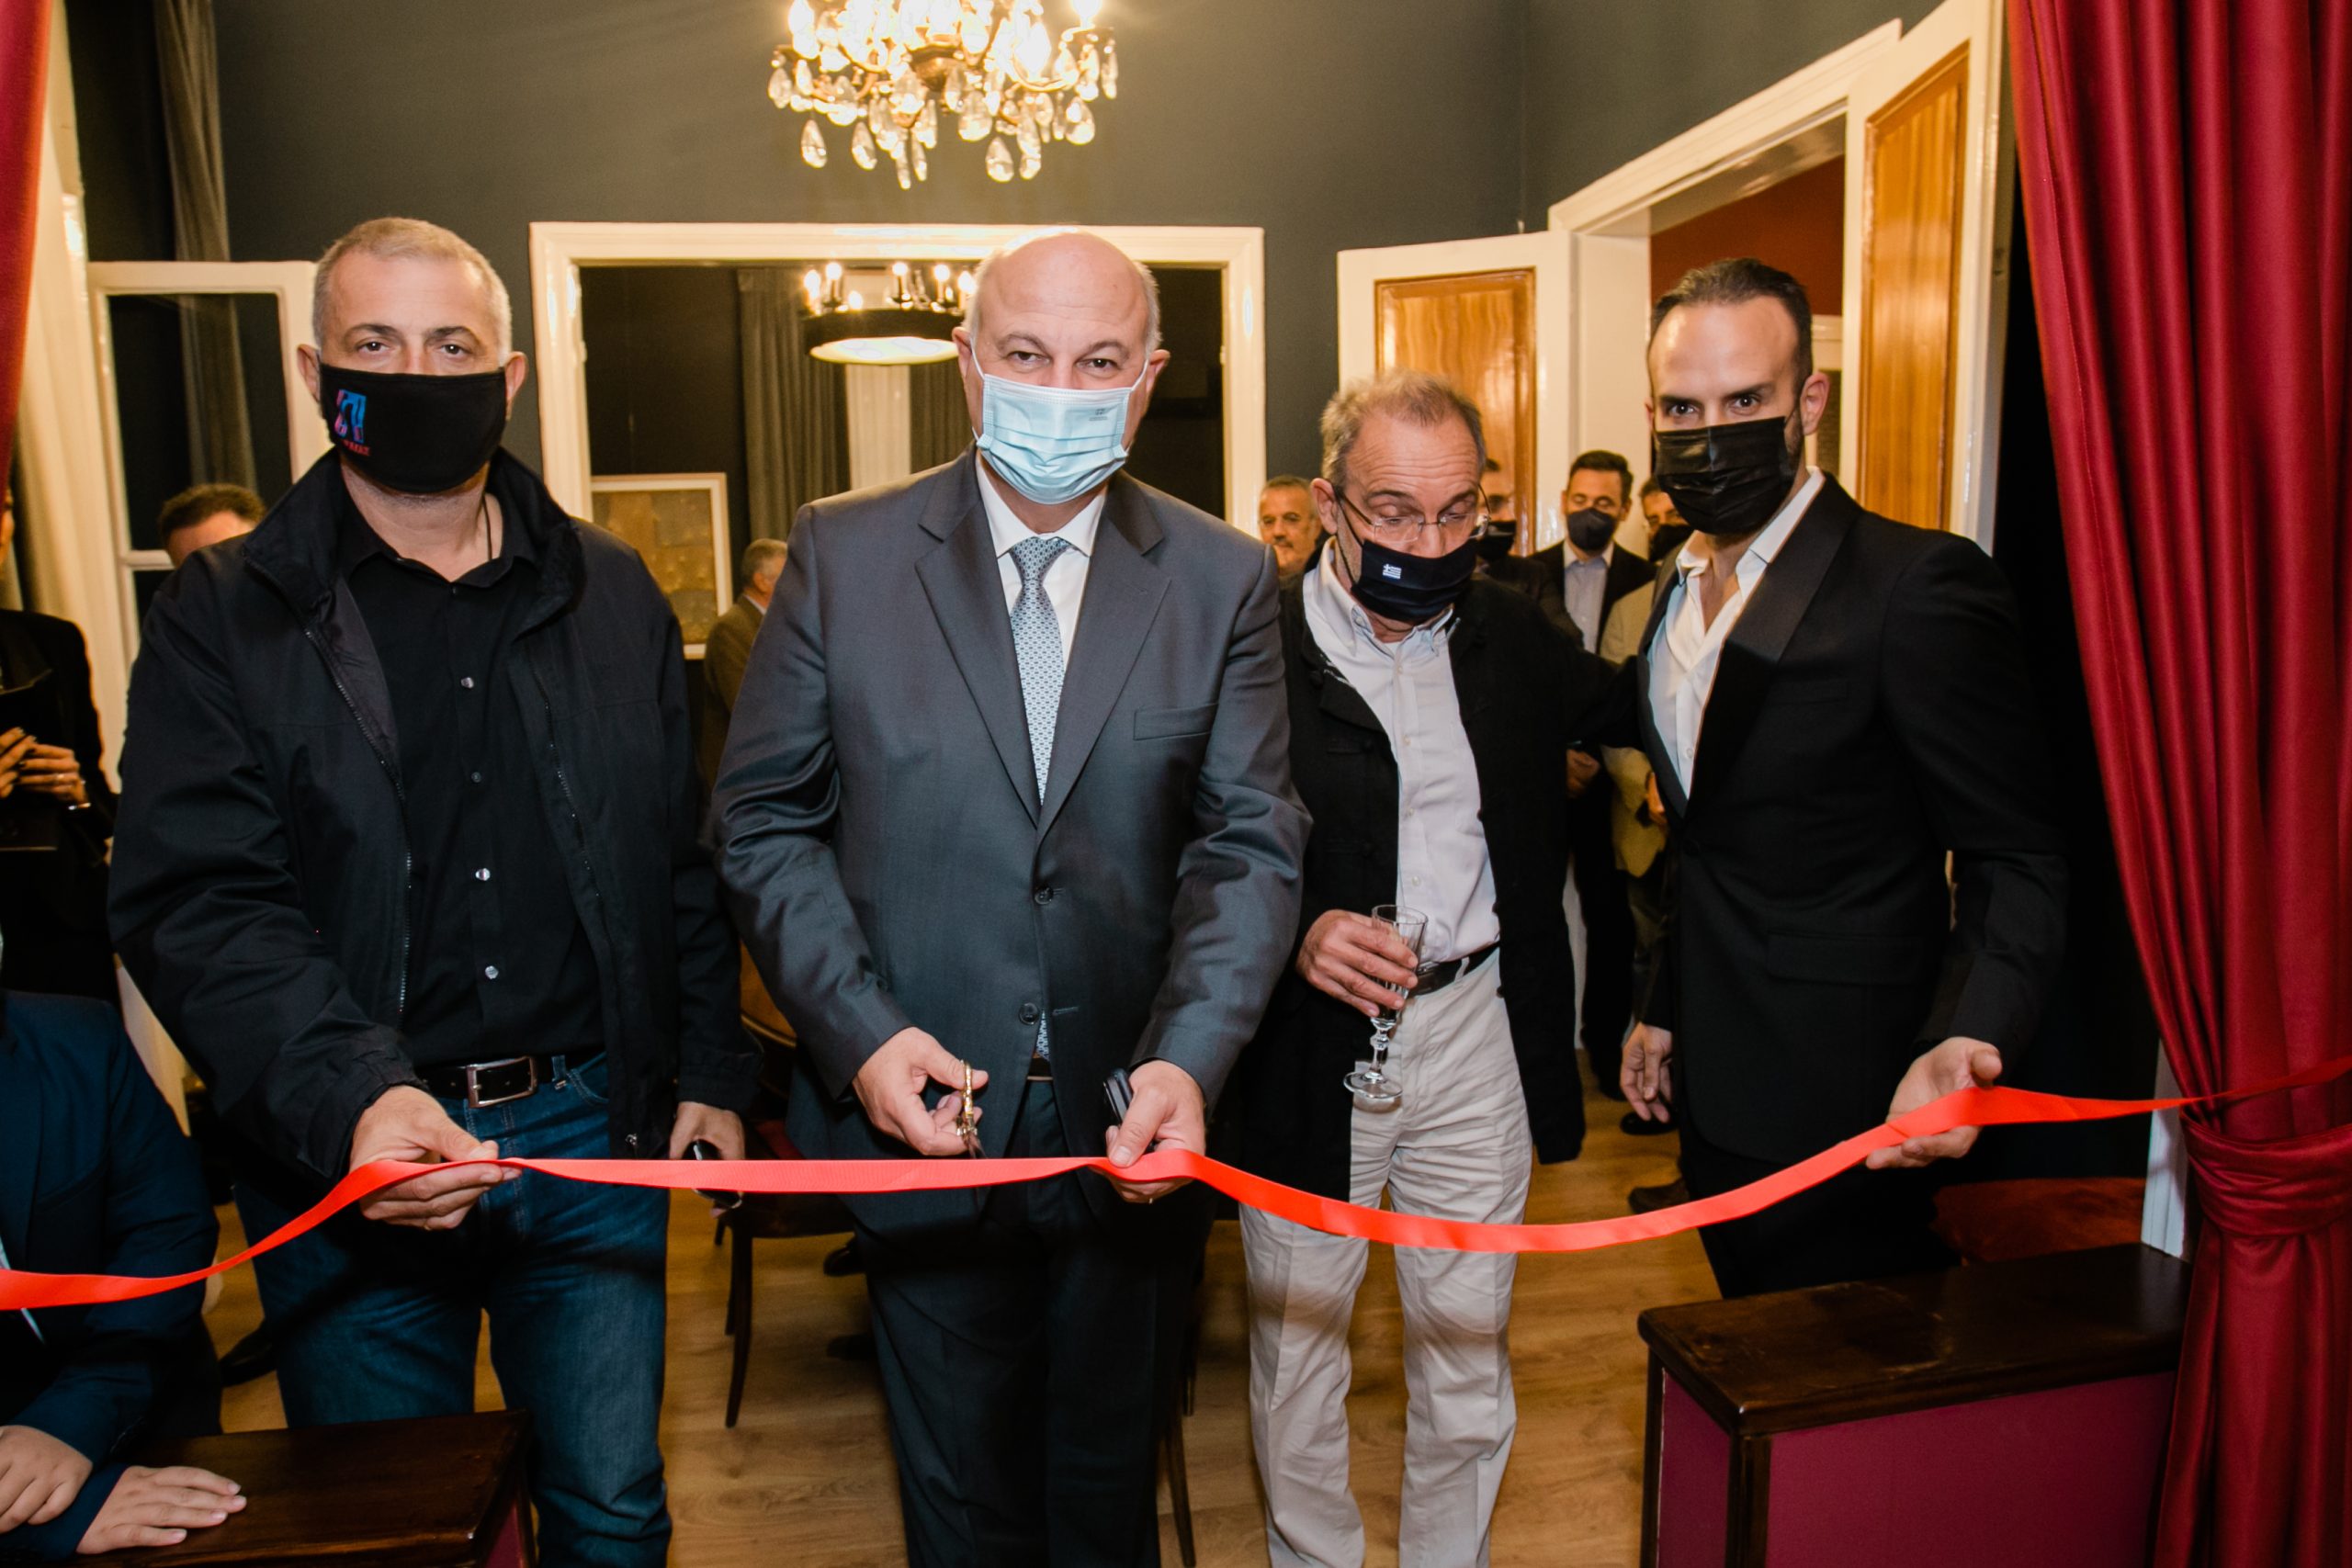 Ο υπουργός Δικαιοσύνης και ο Δήμαρχος Πειραιά εγκαινίασαν τον νέο χώρο τέχνης 212 ARTS του Ε.Γεωργούλη